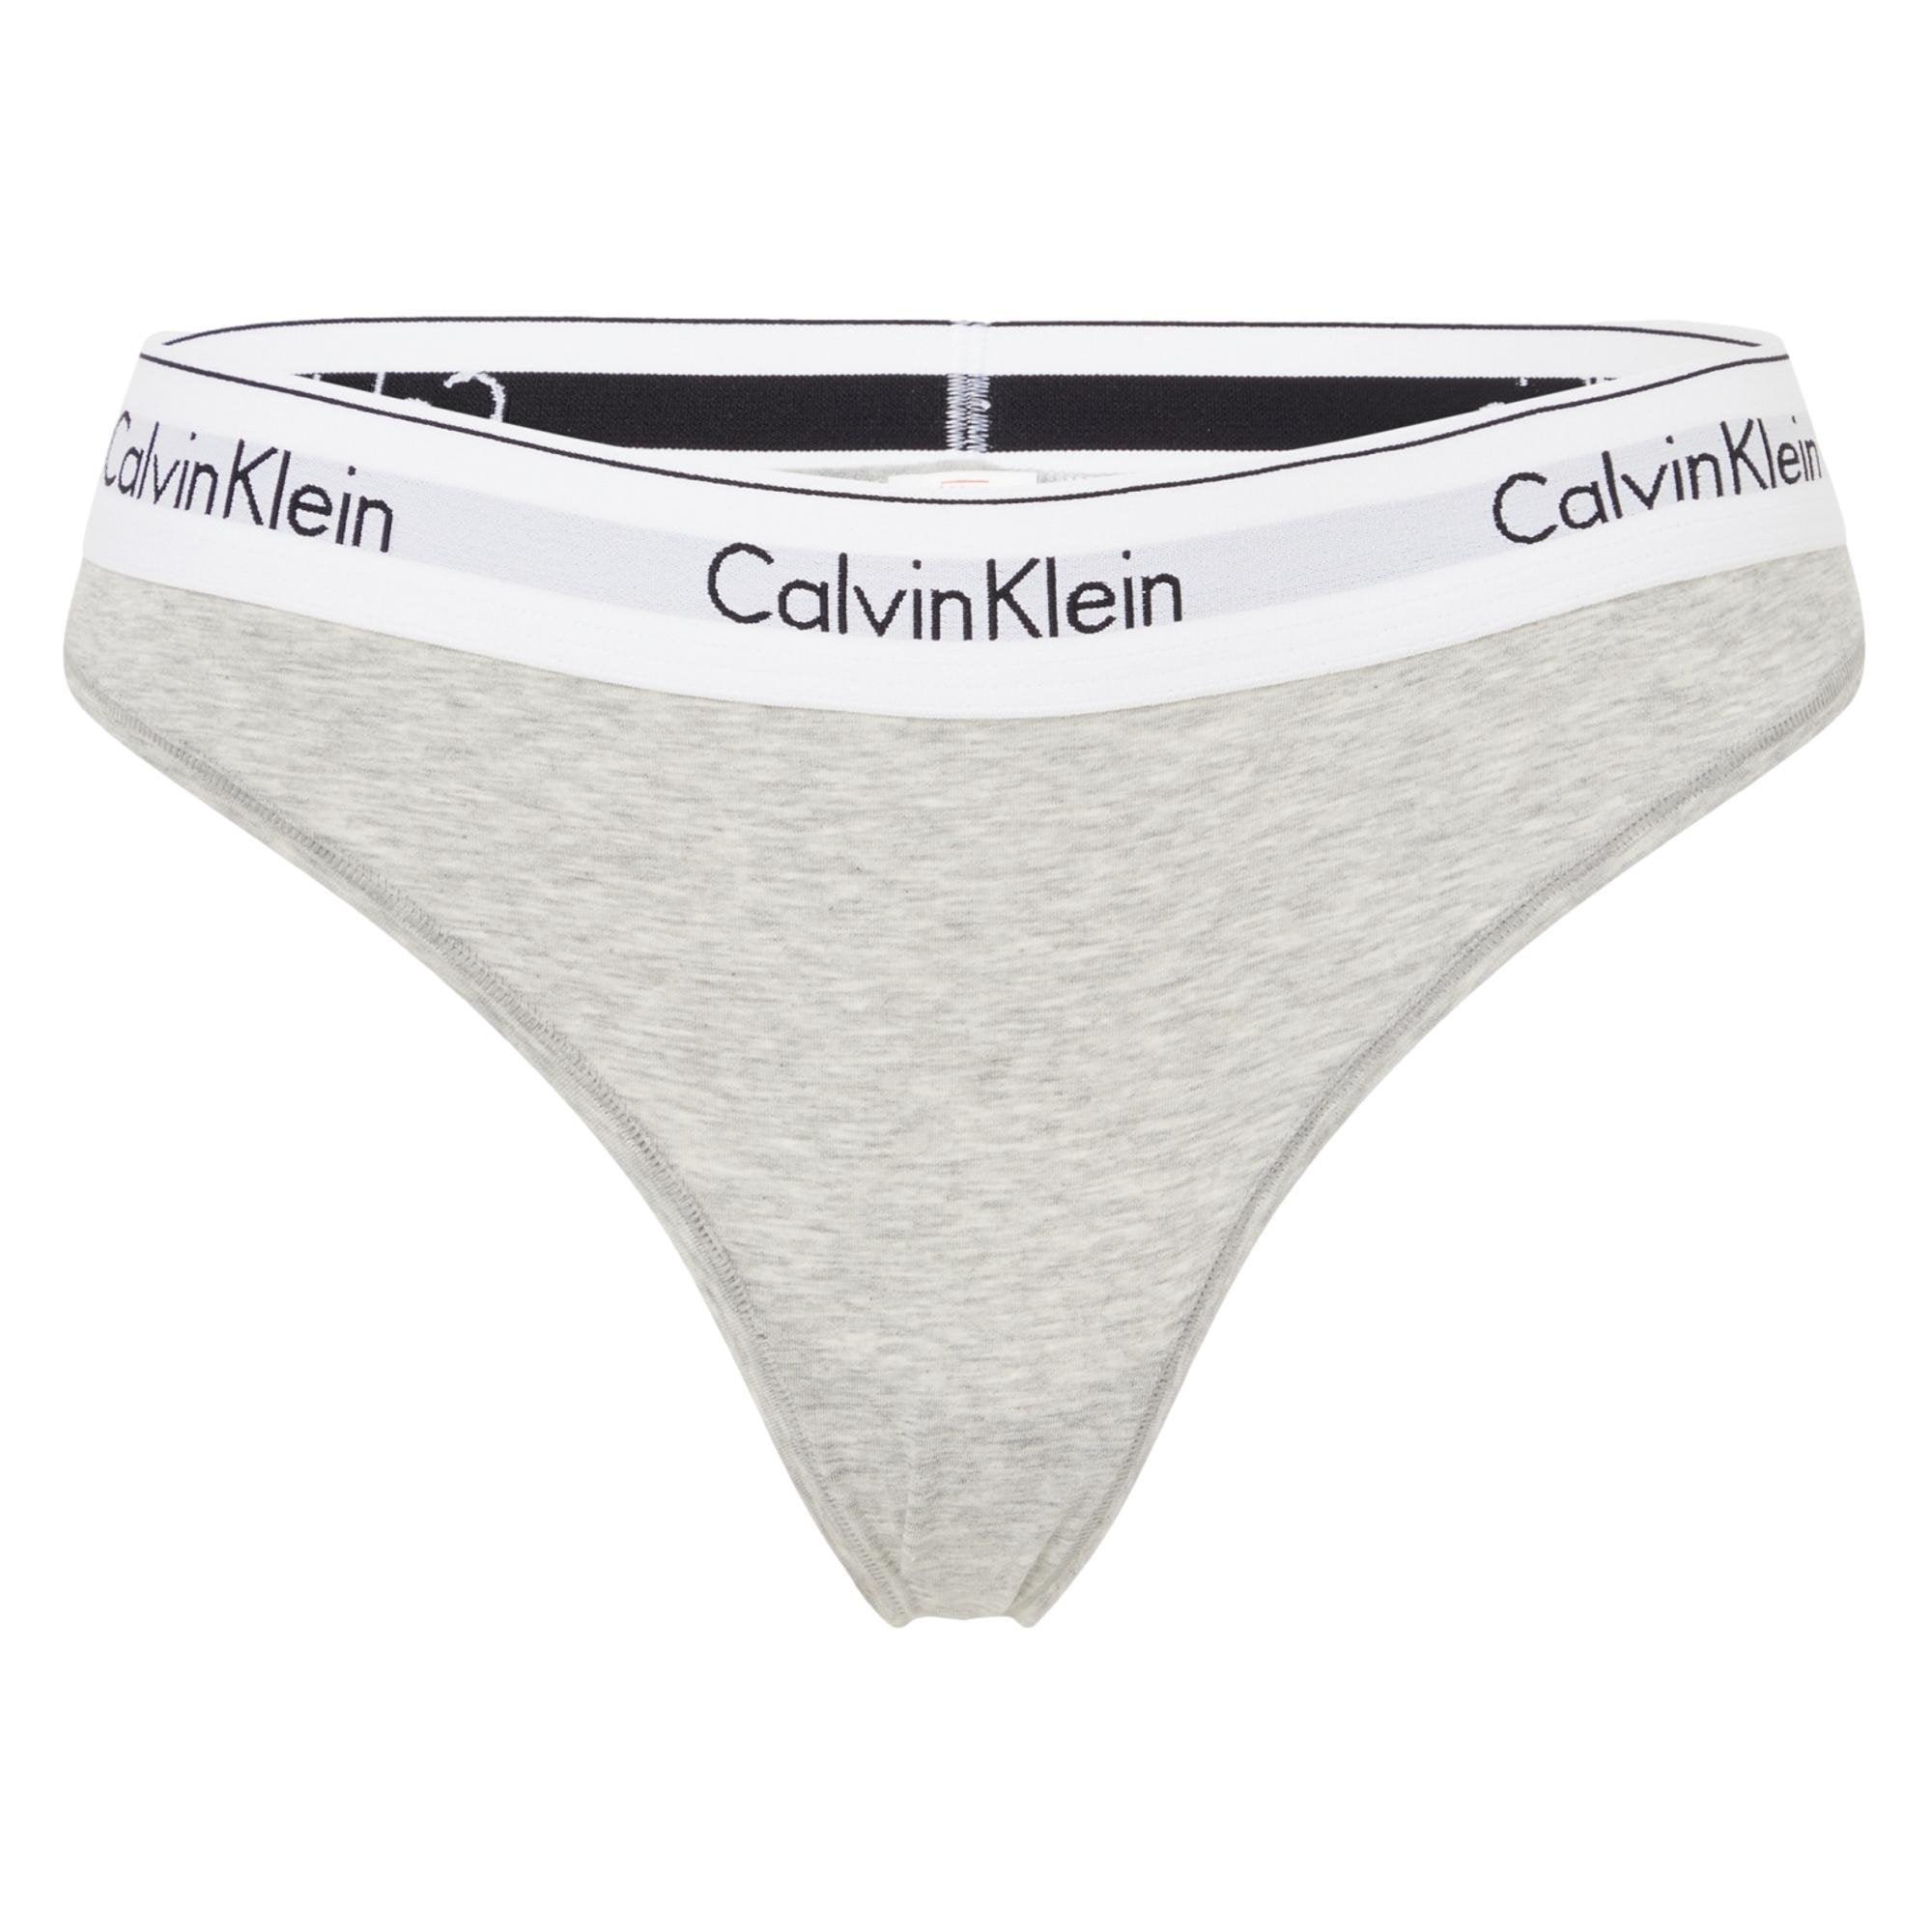 Calvin Klein Womens High Waiste Hipster Boyshort Modern Cotton Underwear,  Color Grey Heather, Size L : Buy Online at Best Price in KSA - Souq is now  : Fashion